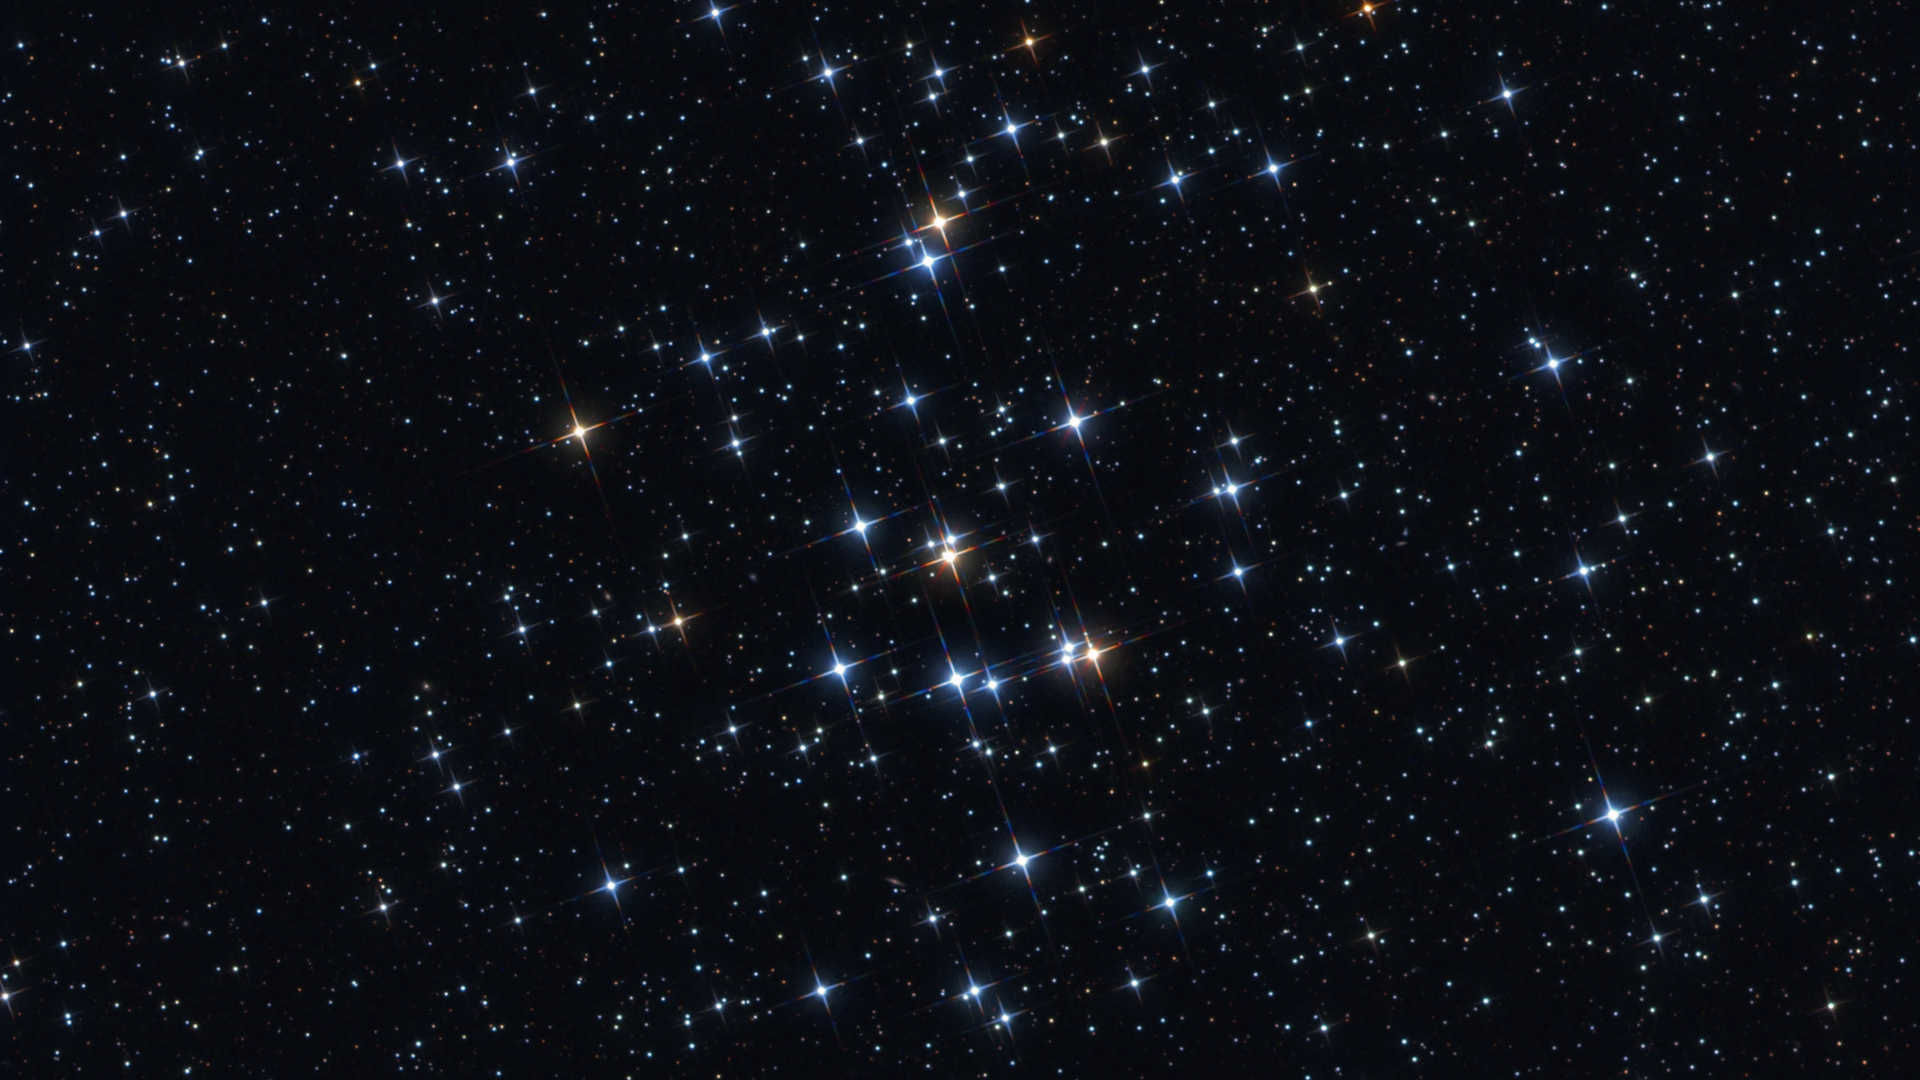 El cúmulo estelar abierto M44 alcanza su máximo esplendor en el cielo nocturno primaveral. Mario Weigand